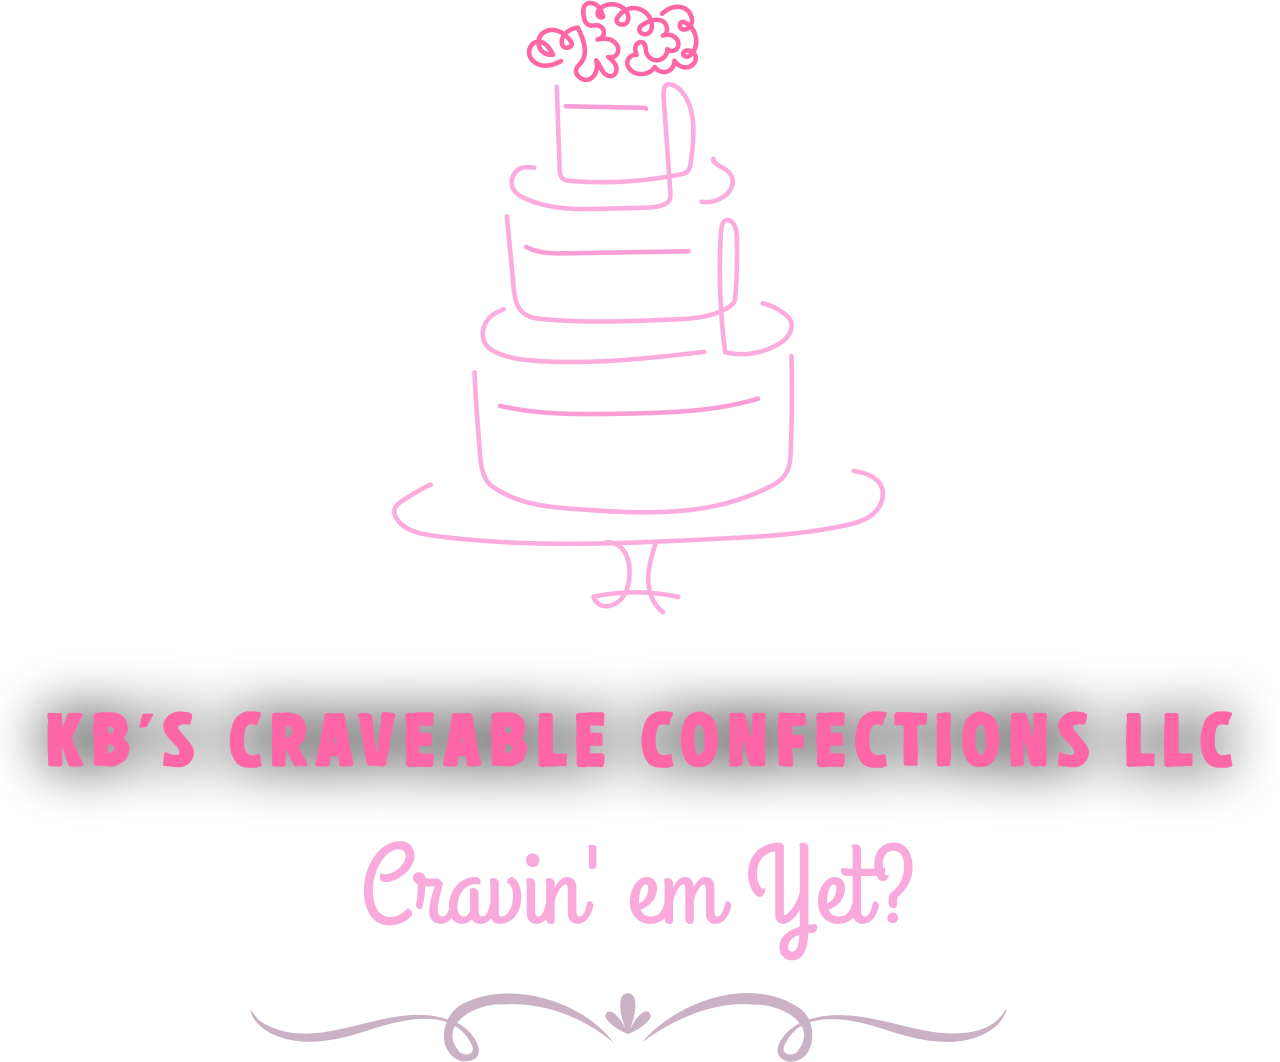 KB's Craveable Confections LLC's logo